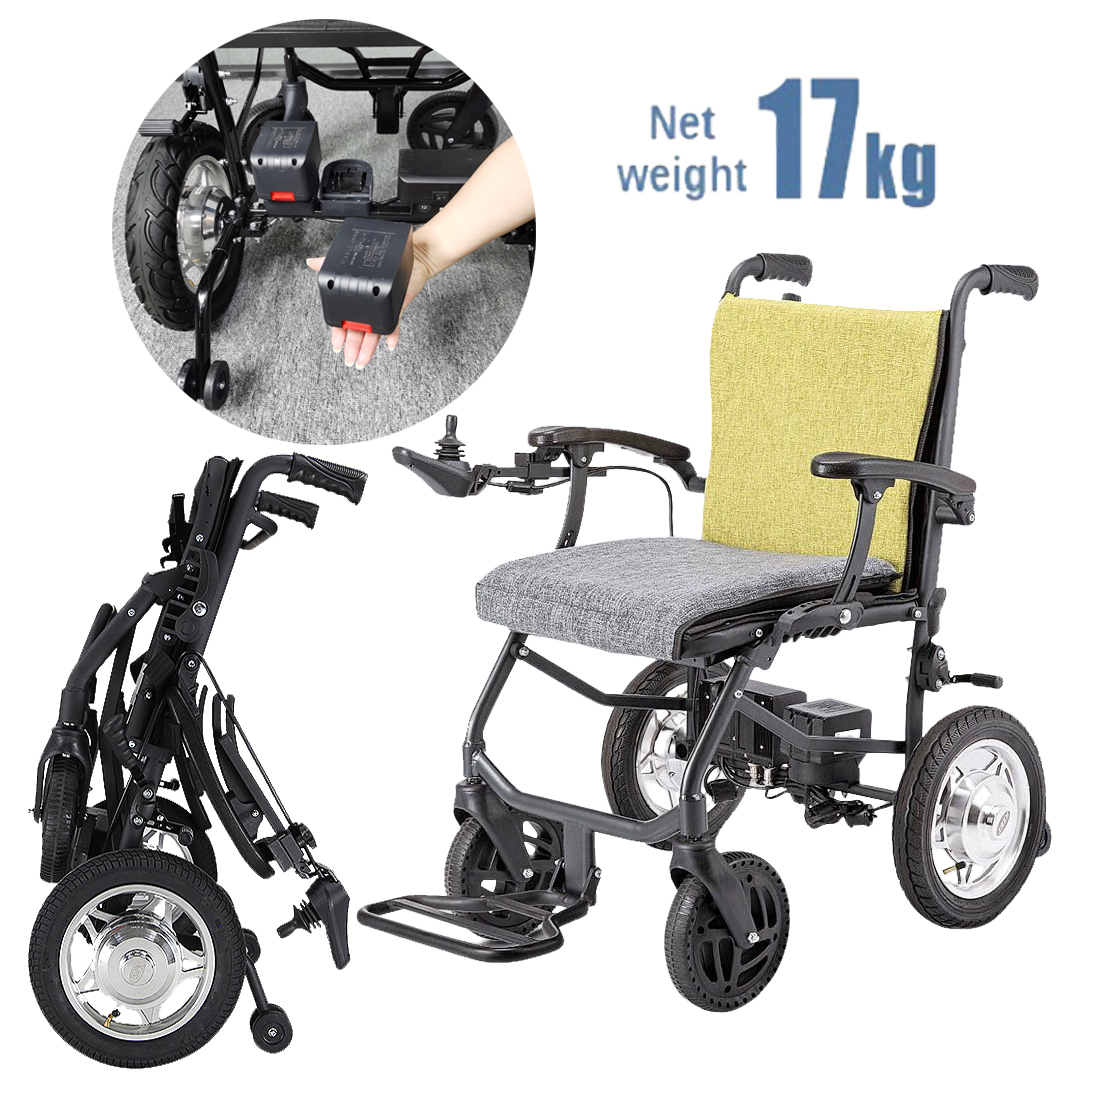 17kg轻型电动轮椅